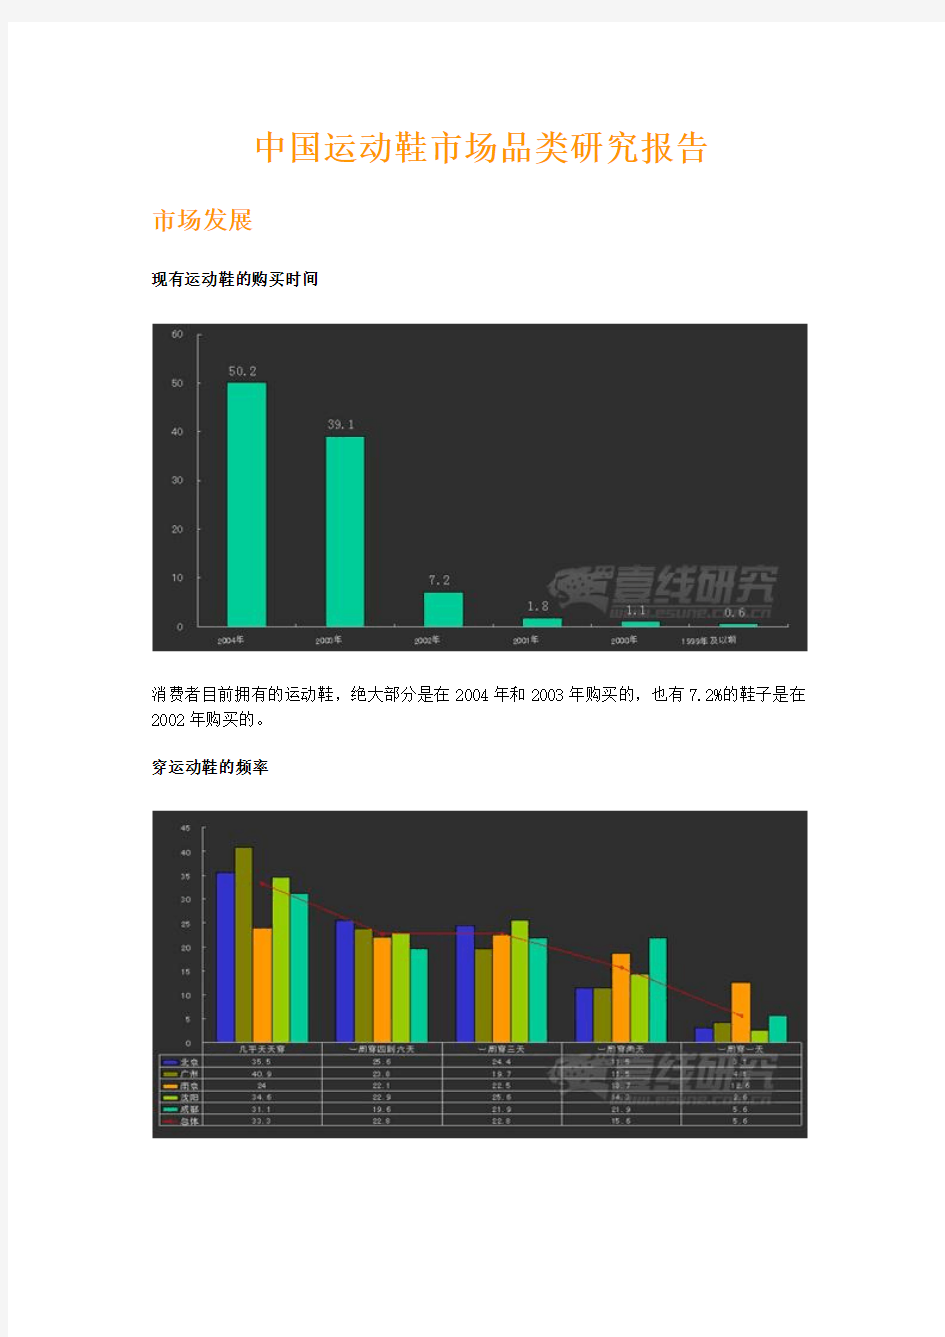 中国运动鞋市场品类研究报告-一线研究